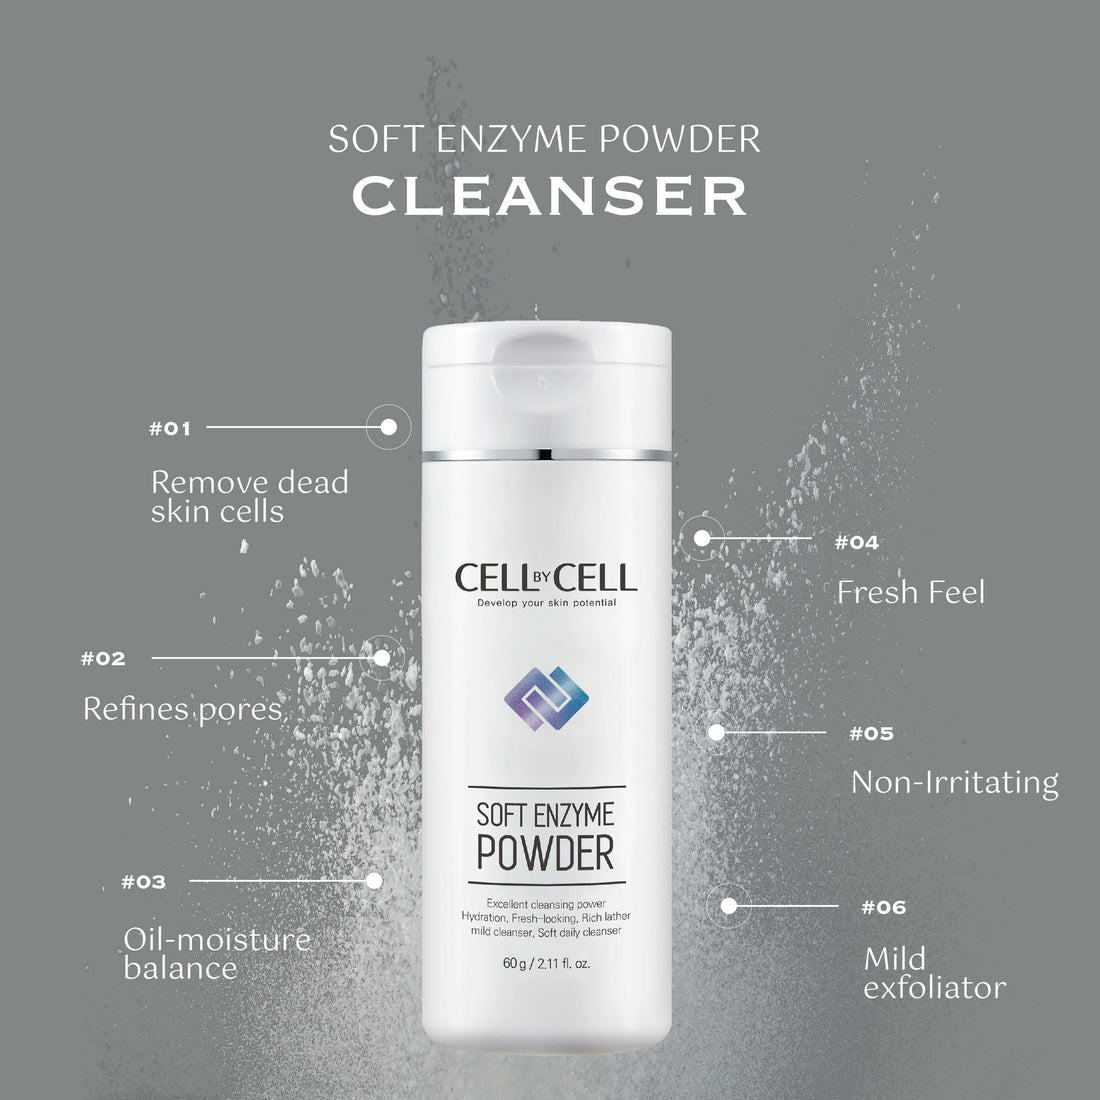 Soft Enzyme Powder